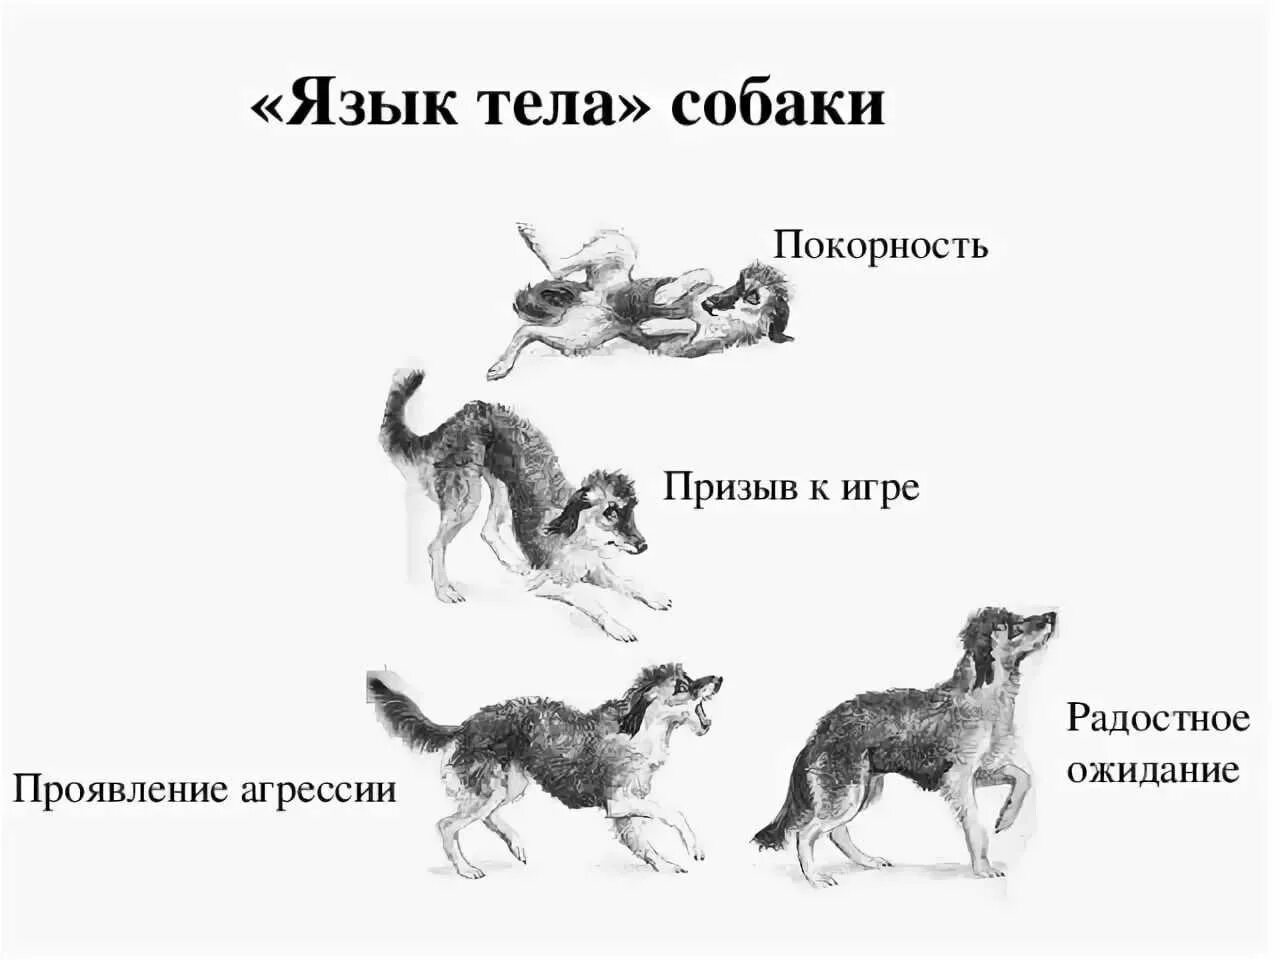 Поведение собак характеристика. Поведение собак. Язык тела собаки в картинках. Араедение собак. Виды поведения собак.